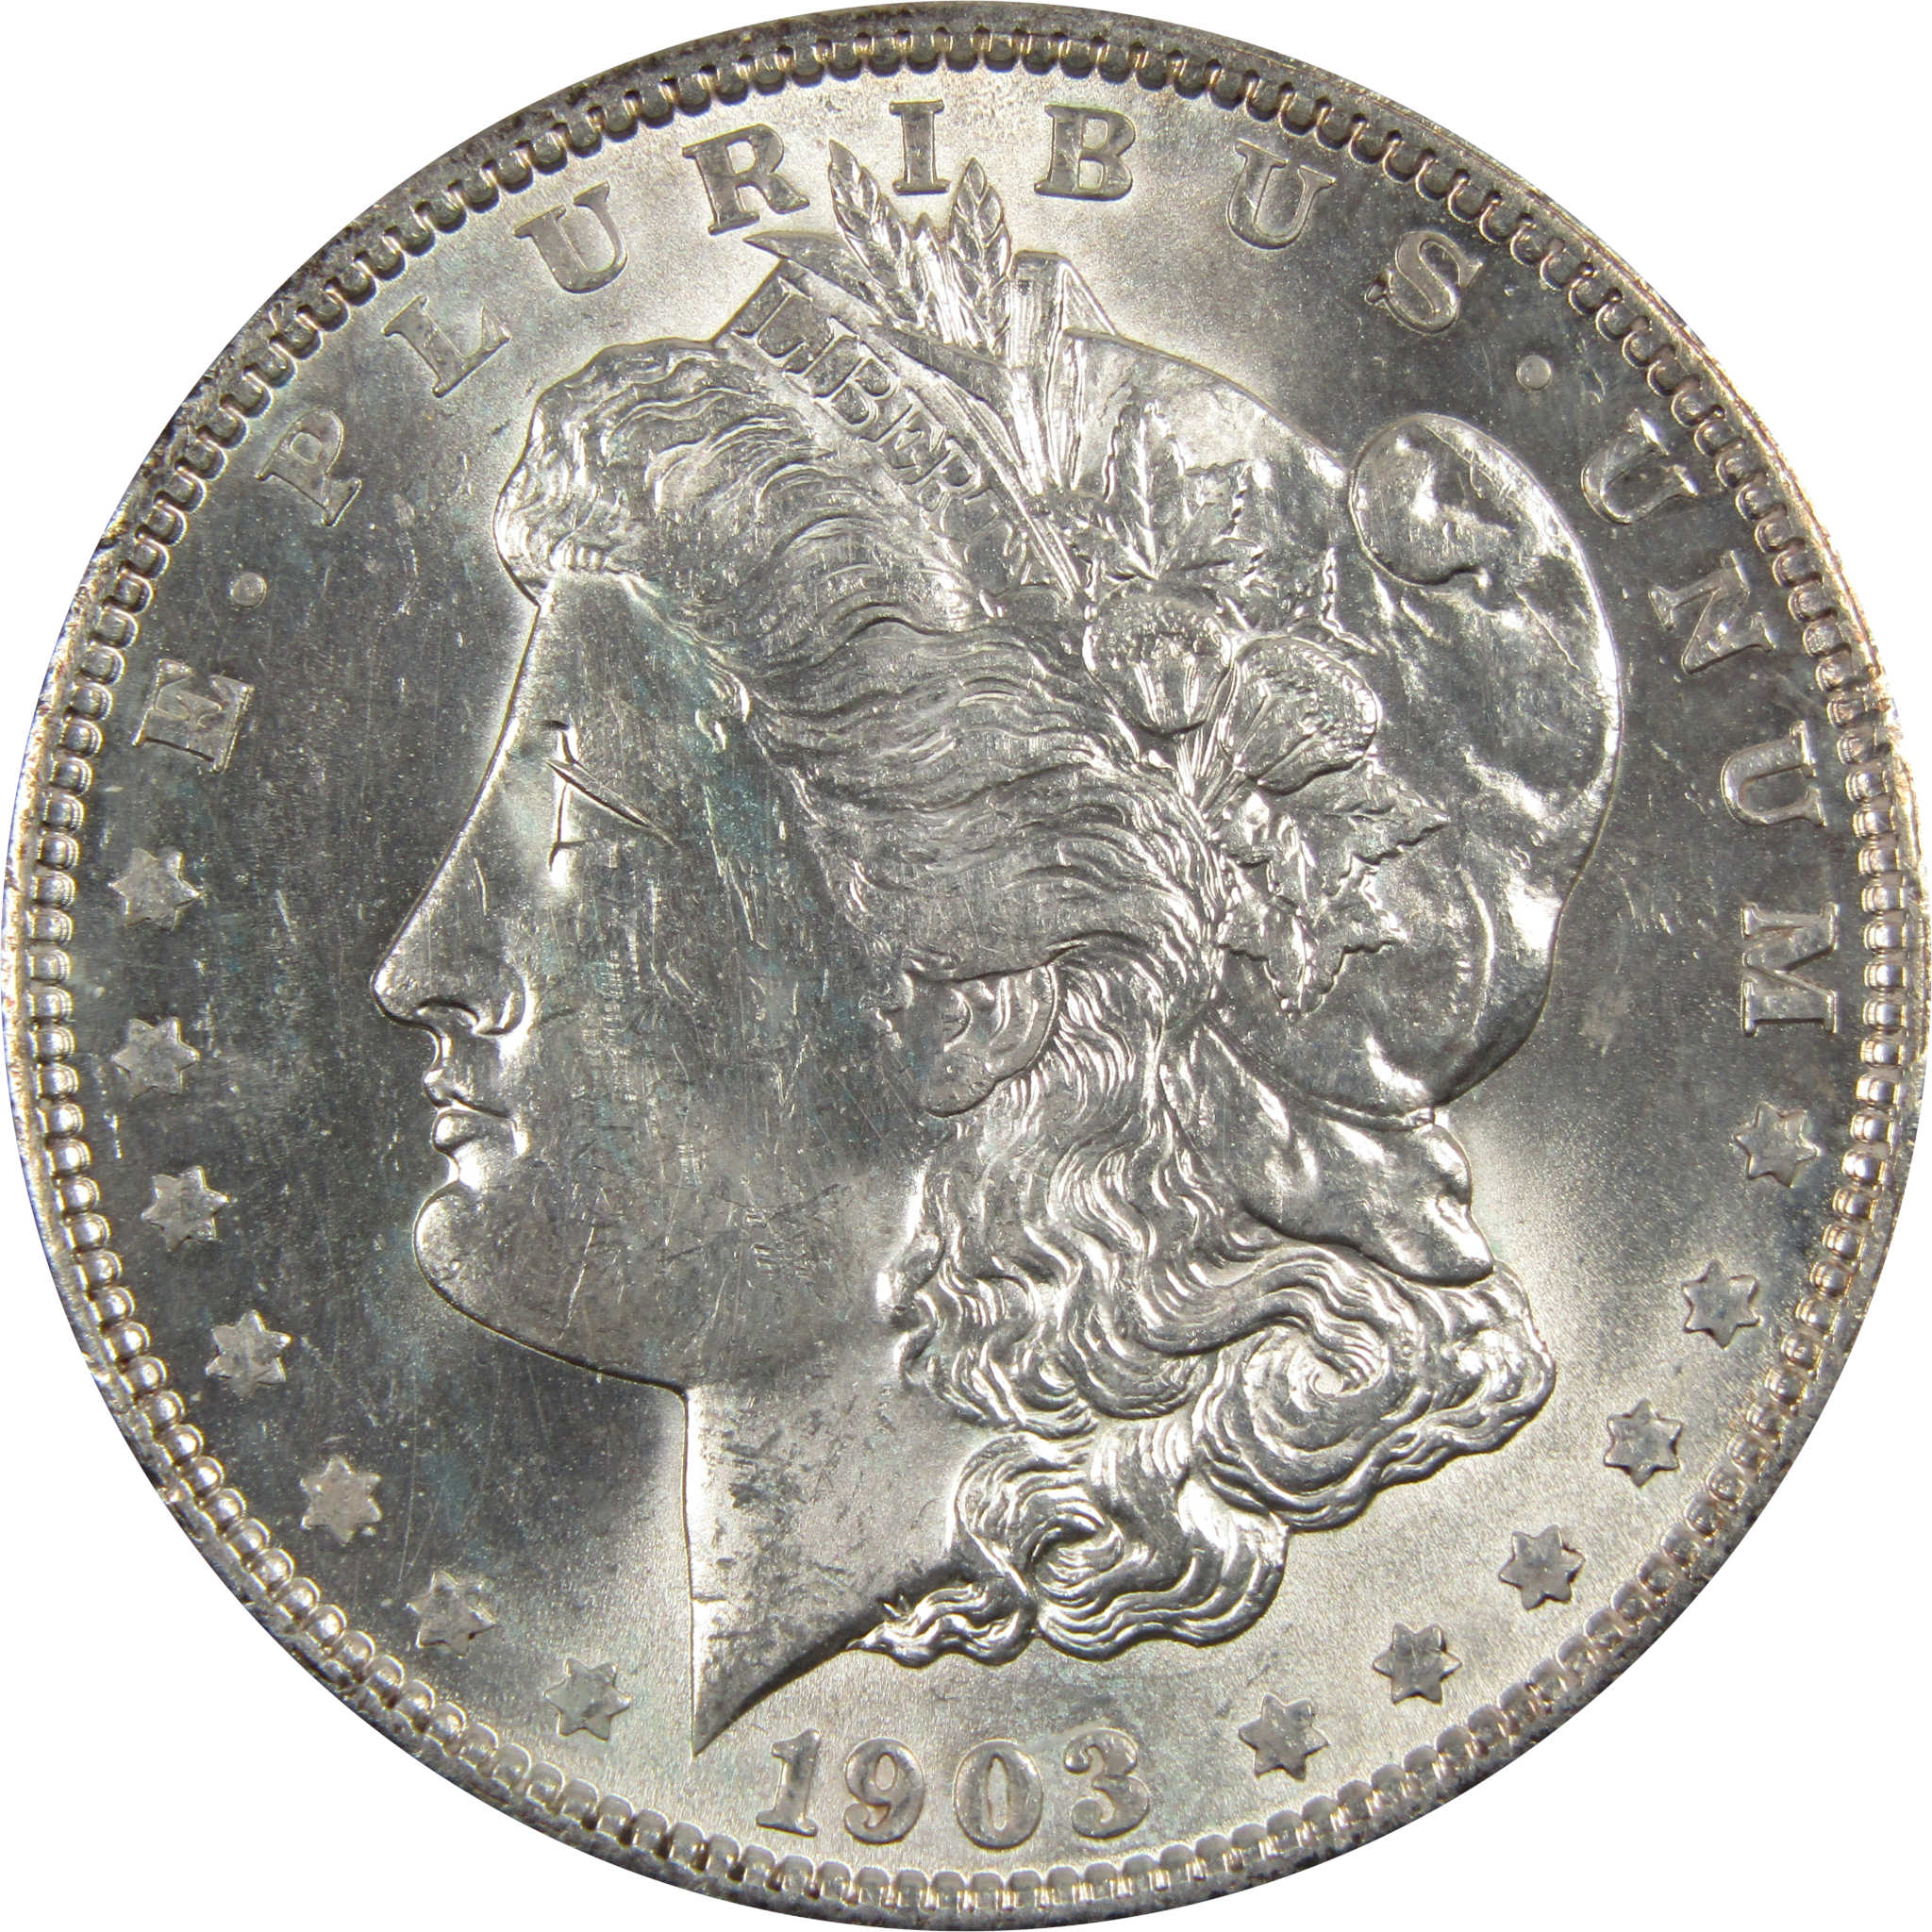 1903 O Morgan Dollar BU Choice Uncirculated 90% Silver $1 SKU:I7916 - Morgan coin - Morgan silver dollar - Morgan silver dollar for sale - Profile Coins &amp; Collectibles